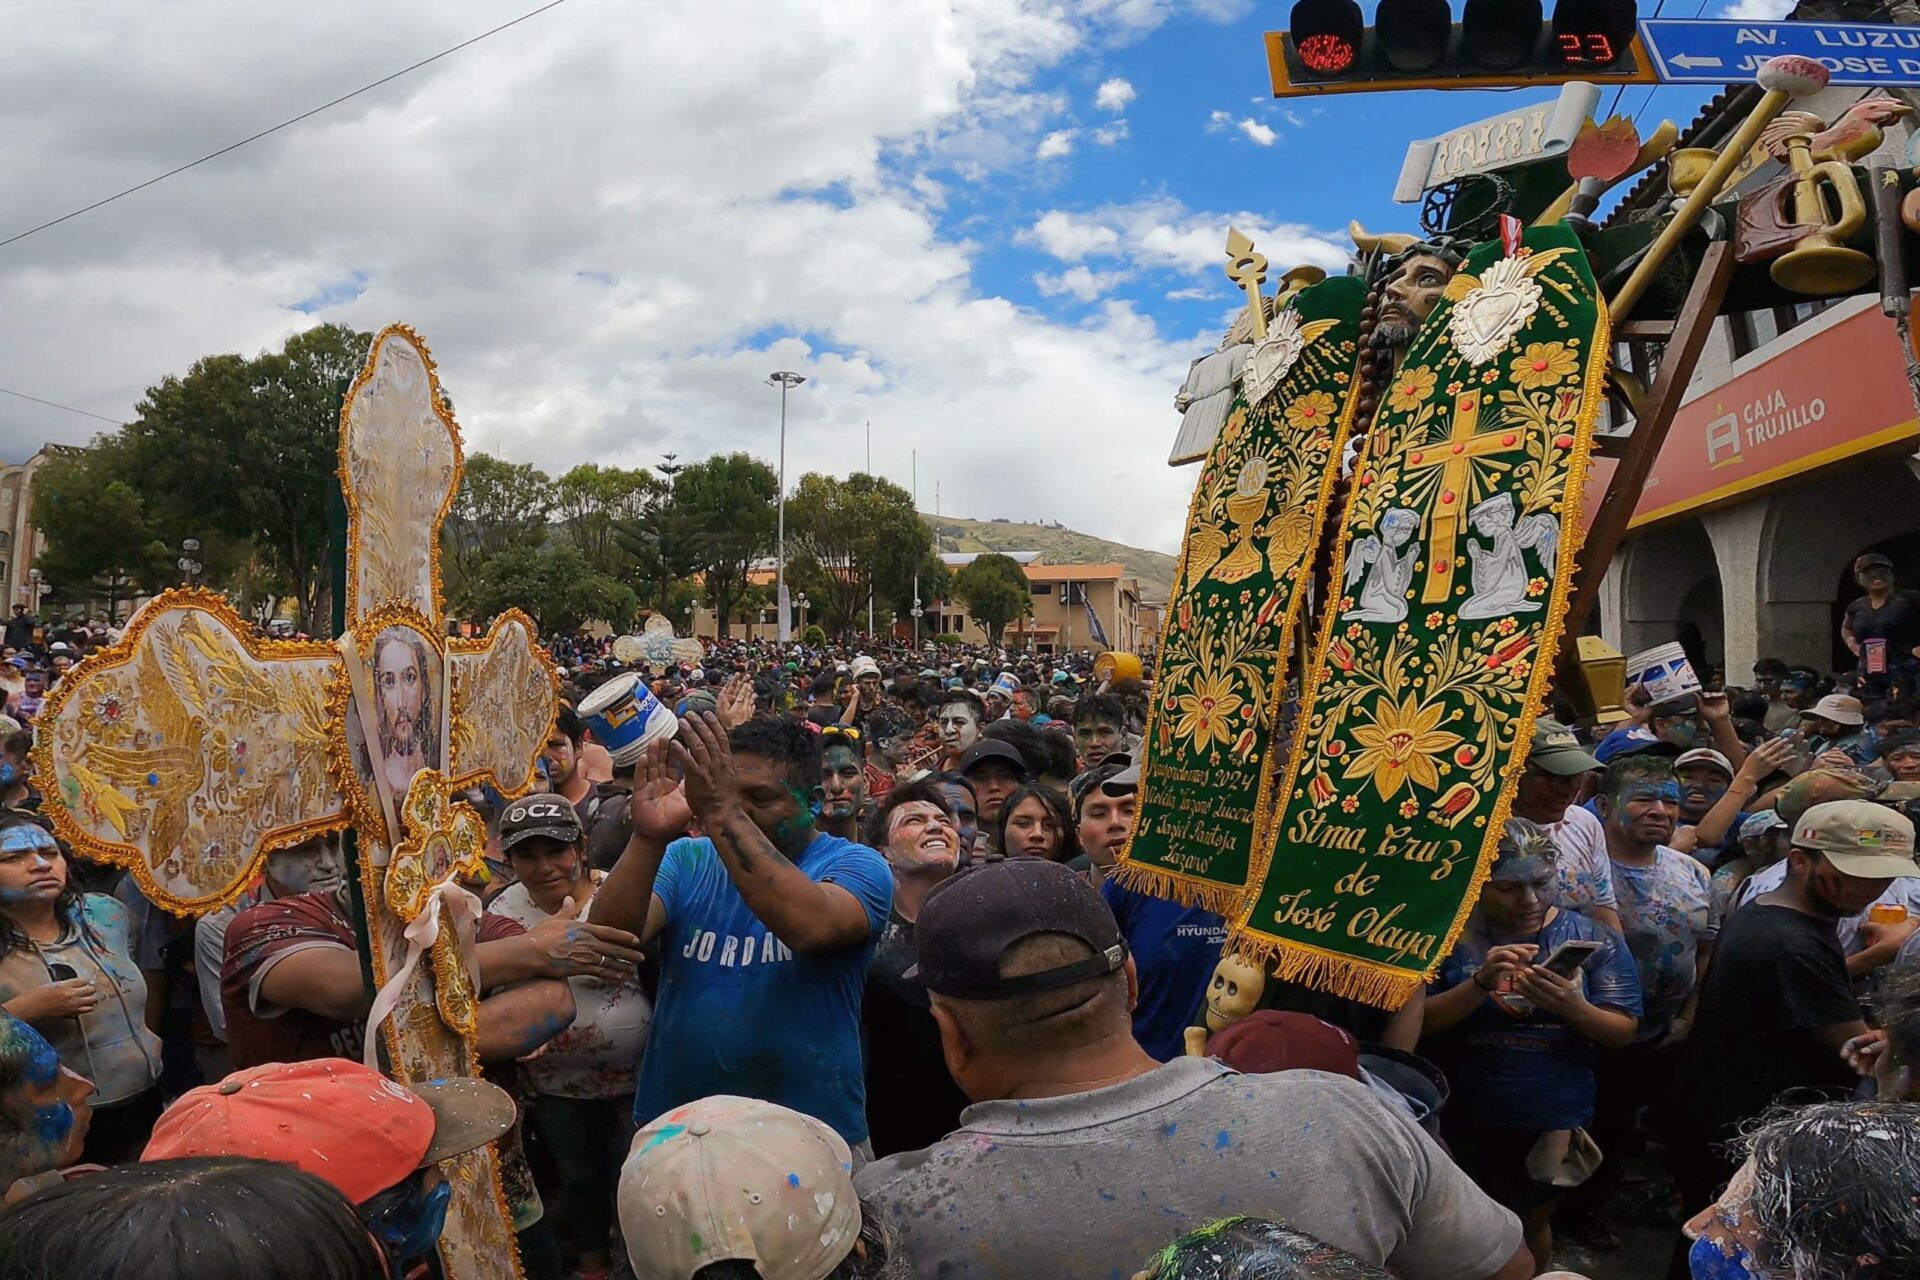 ワラス ペルー カーニバル 戦いの火曜日と十字架の集まり ブログ 井上晶 ナンディ・ペルー